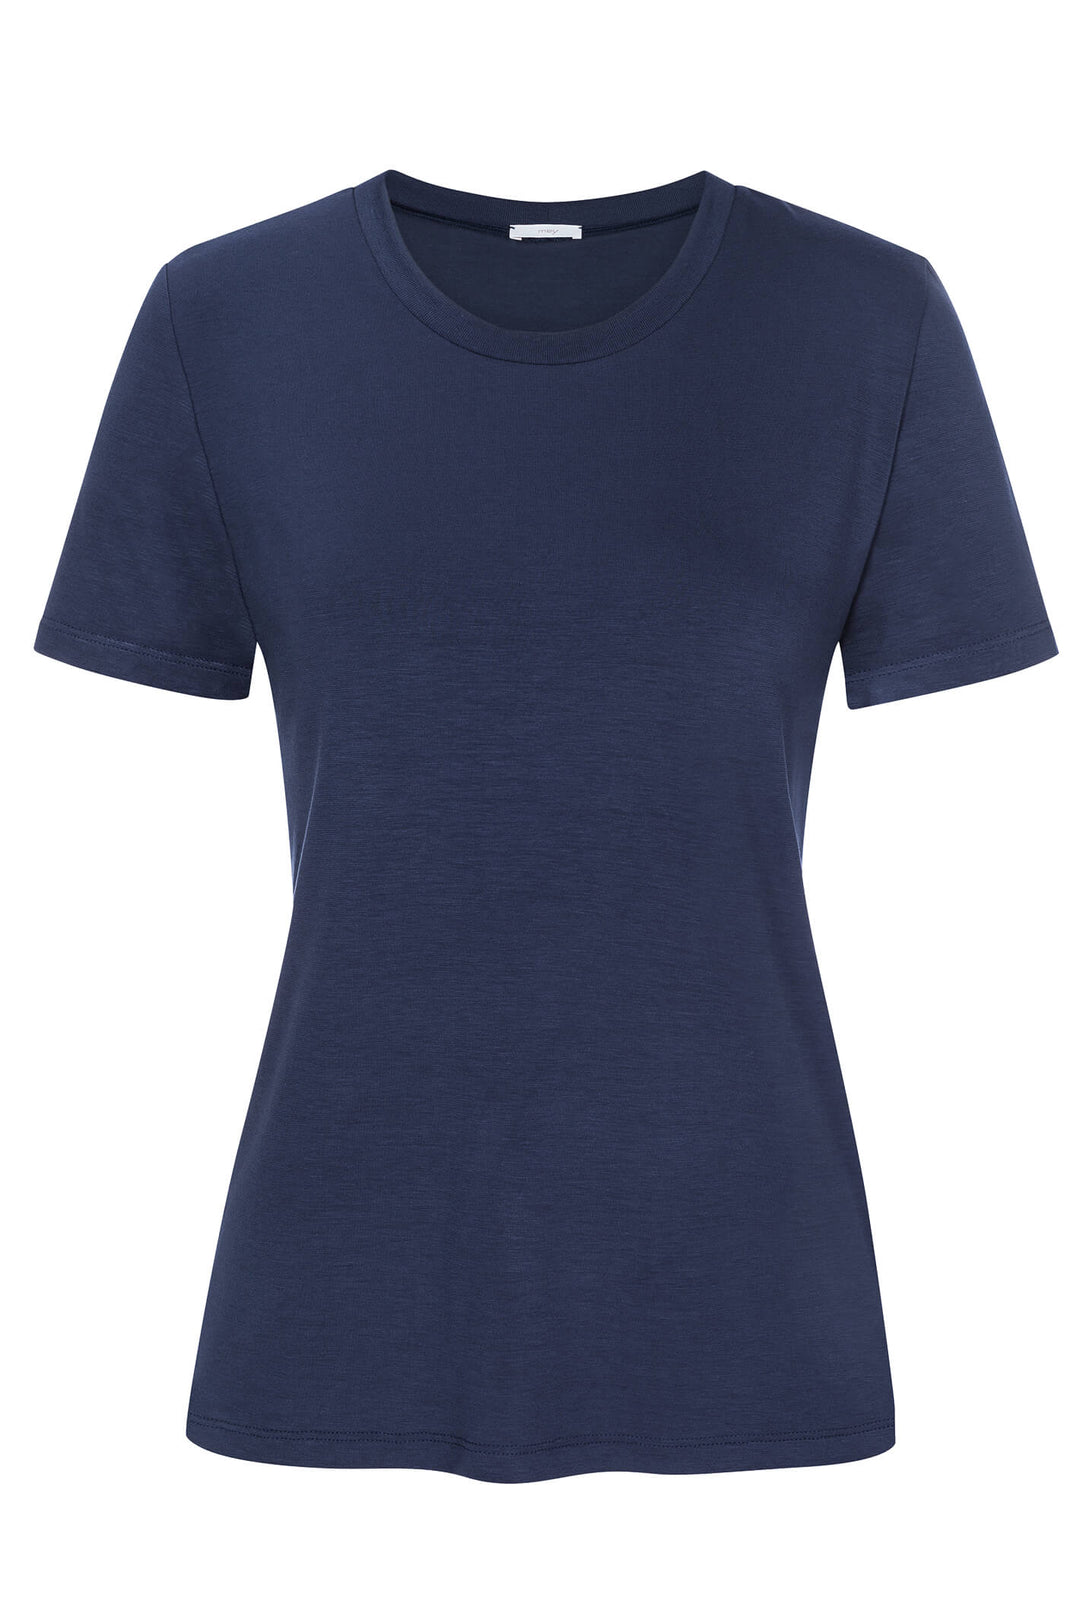 Mey 16016 388 True Blue T-Shirt - Shirley Allum Boutique